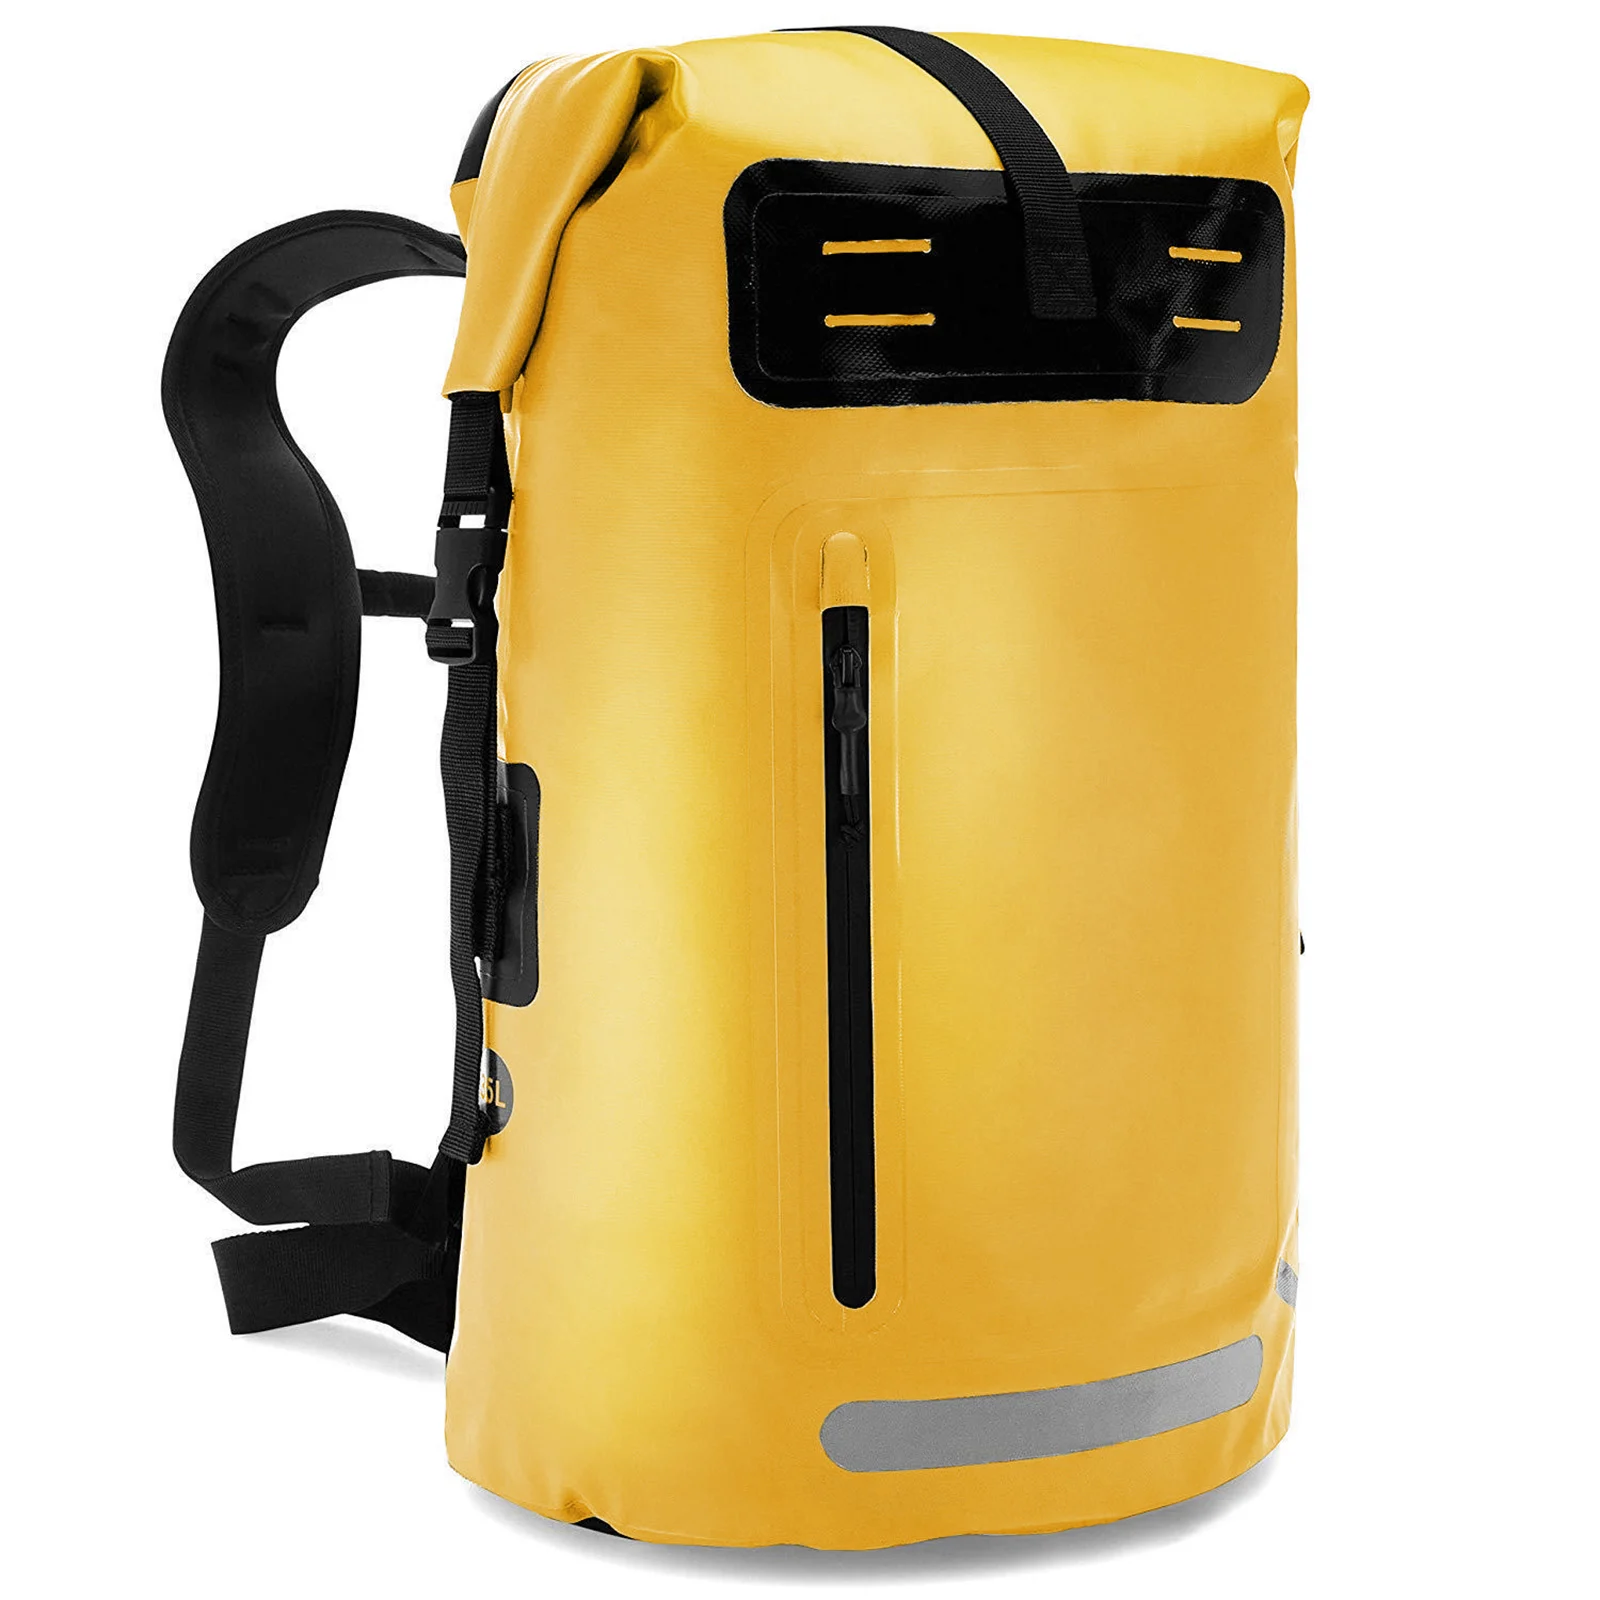 

Waterproof Backpack Heavy Duty Roll-Top Dry Bag for Kayaking Rafting Boating